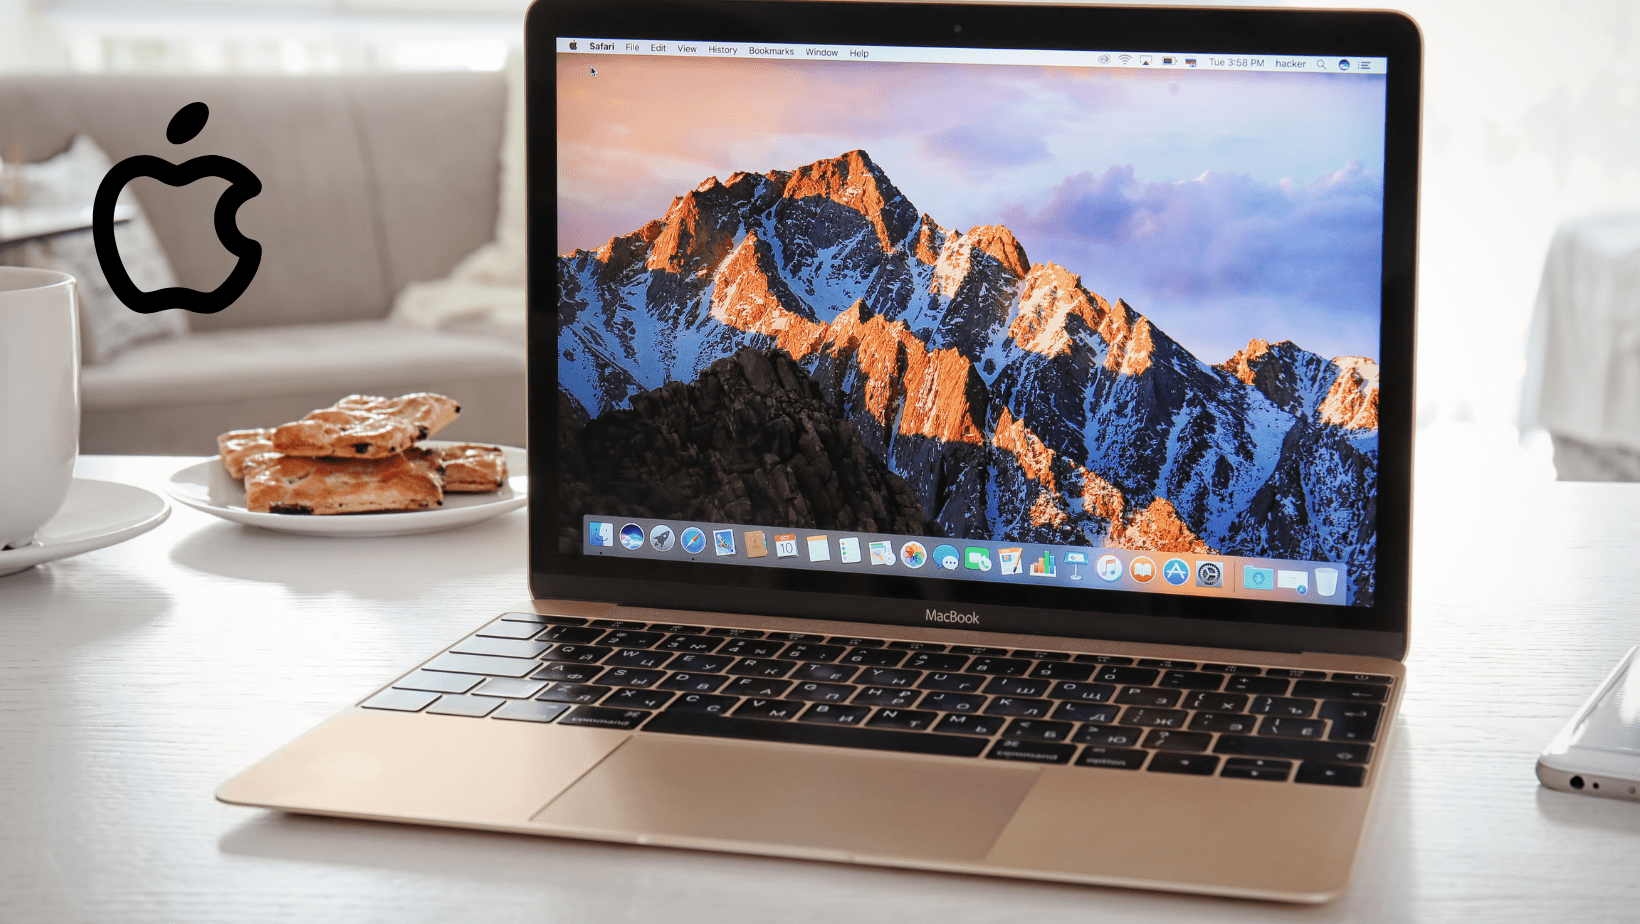 אפל מתכננת השקה של מחשבי MacBook זולים